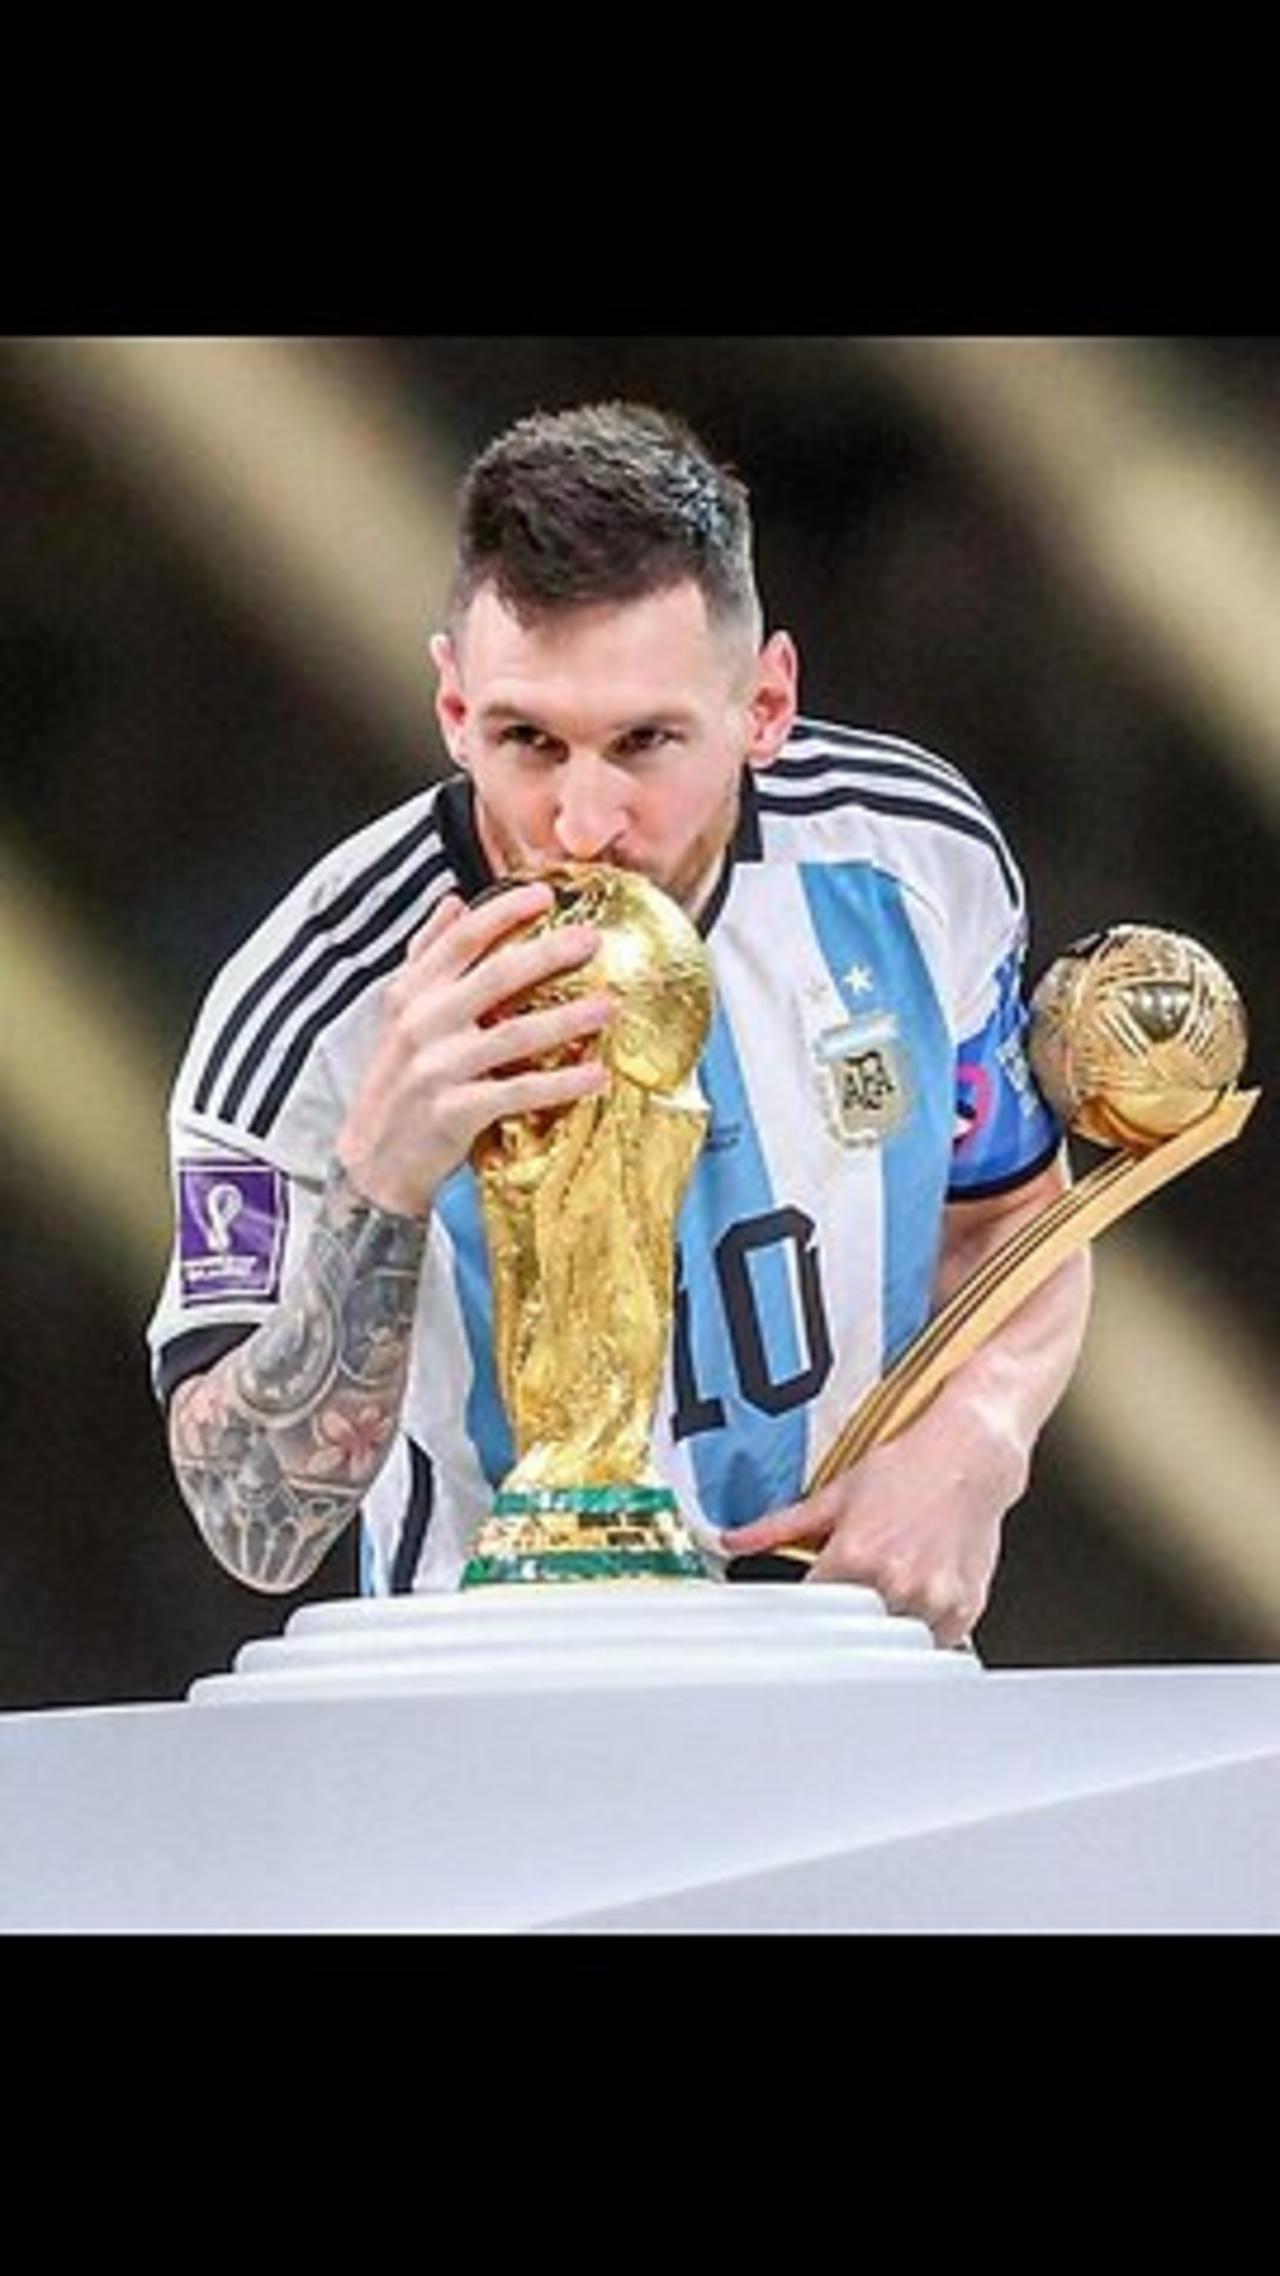 Lionel Messi wins his 8th ballon d'or,